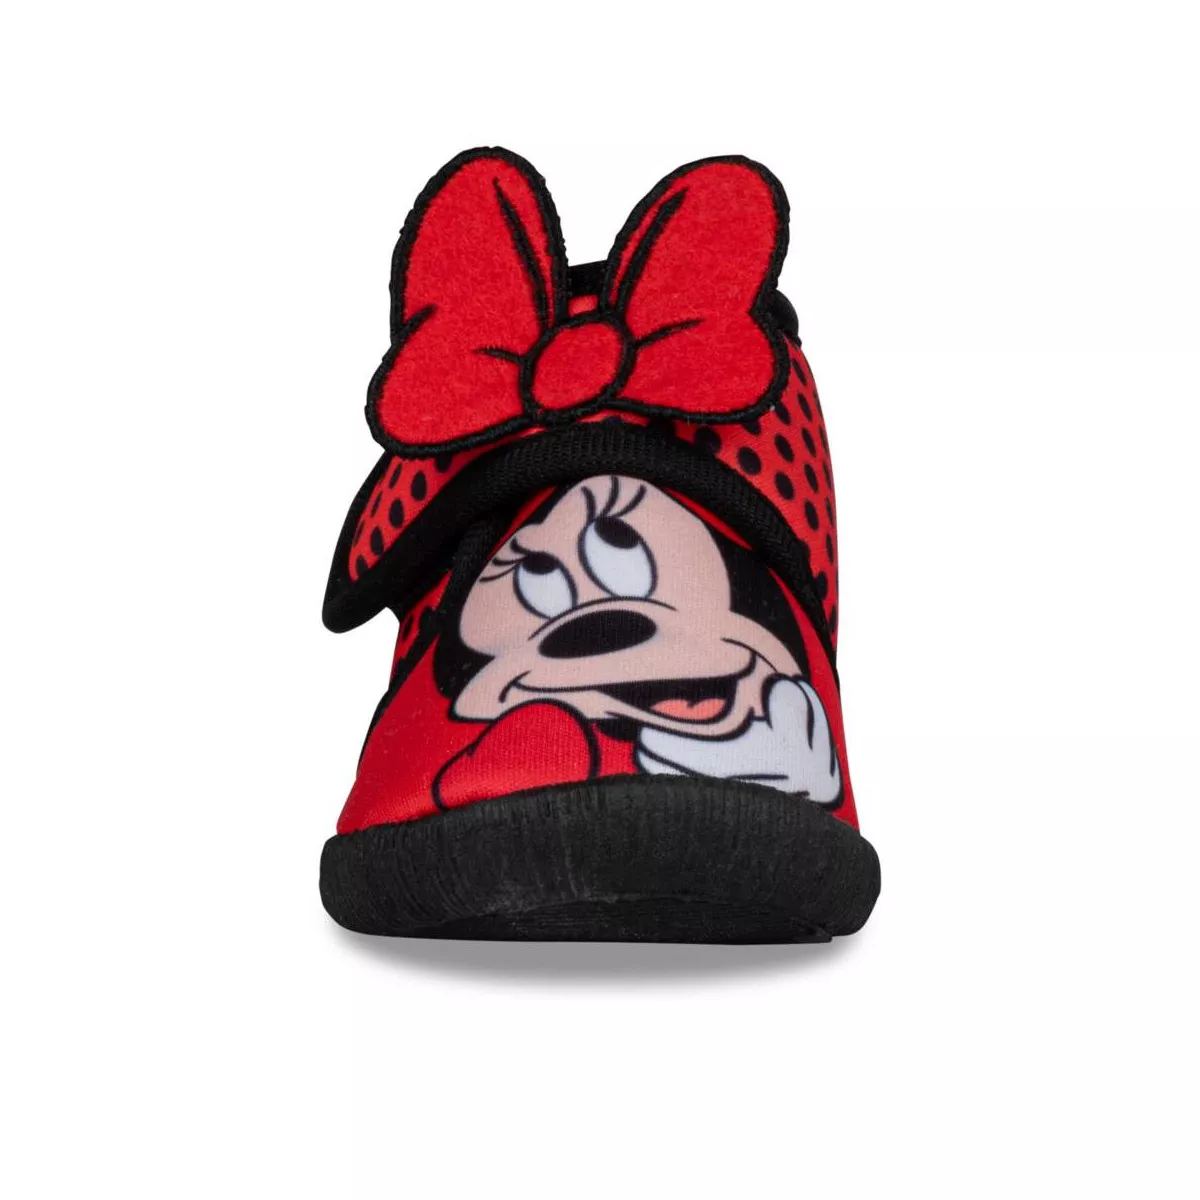 Chausson bébé Disney Minnie Nœud rouge pois blancs lunette rouge avec prénom